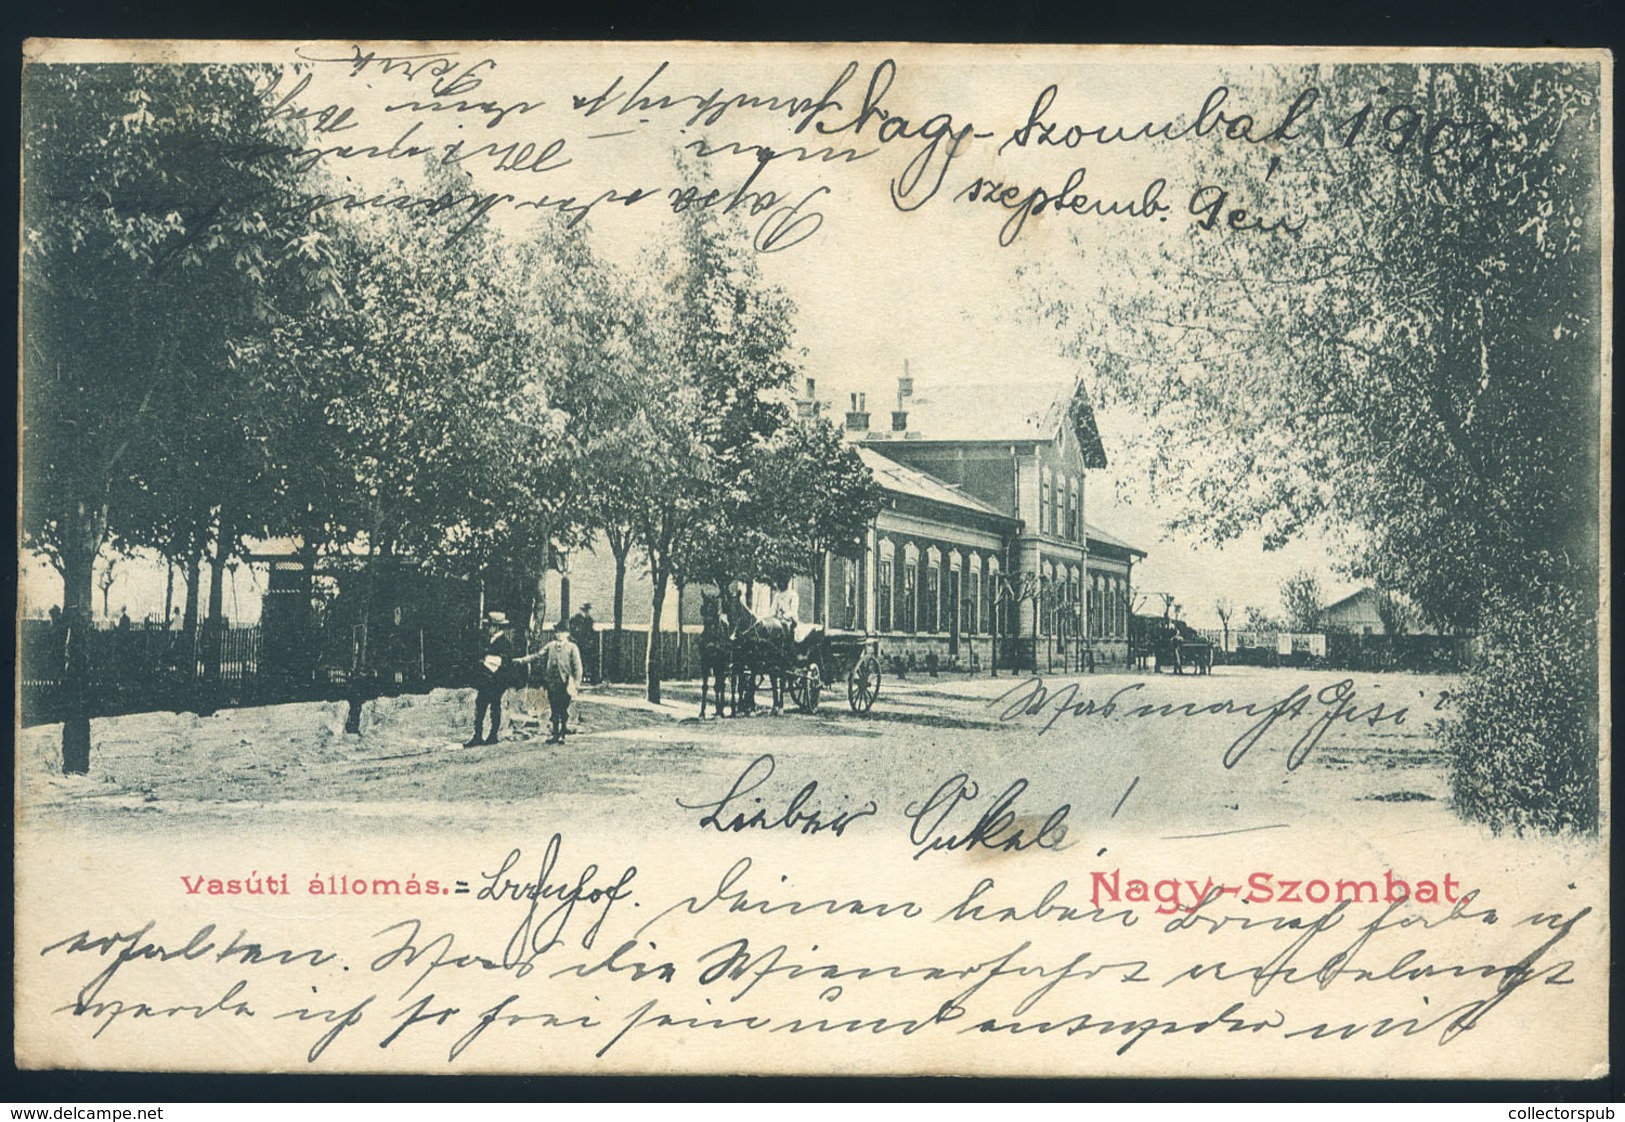 97278 NAGYSZOMBAT 1905. Vasútállomás, Régi Képeslap  /  NAGYSZOMBAT 1905 Train Station Vintage  Ppc HUNGARY / SLOVAKIA - Hongrie